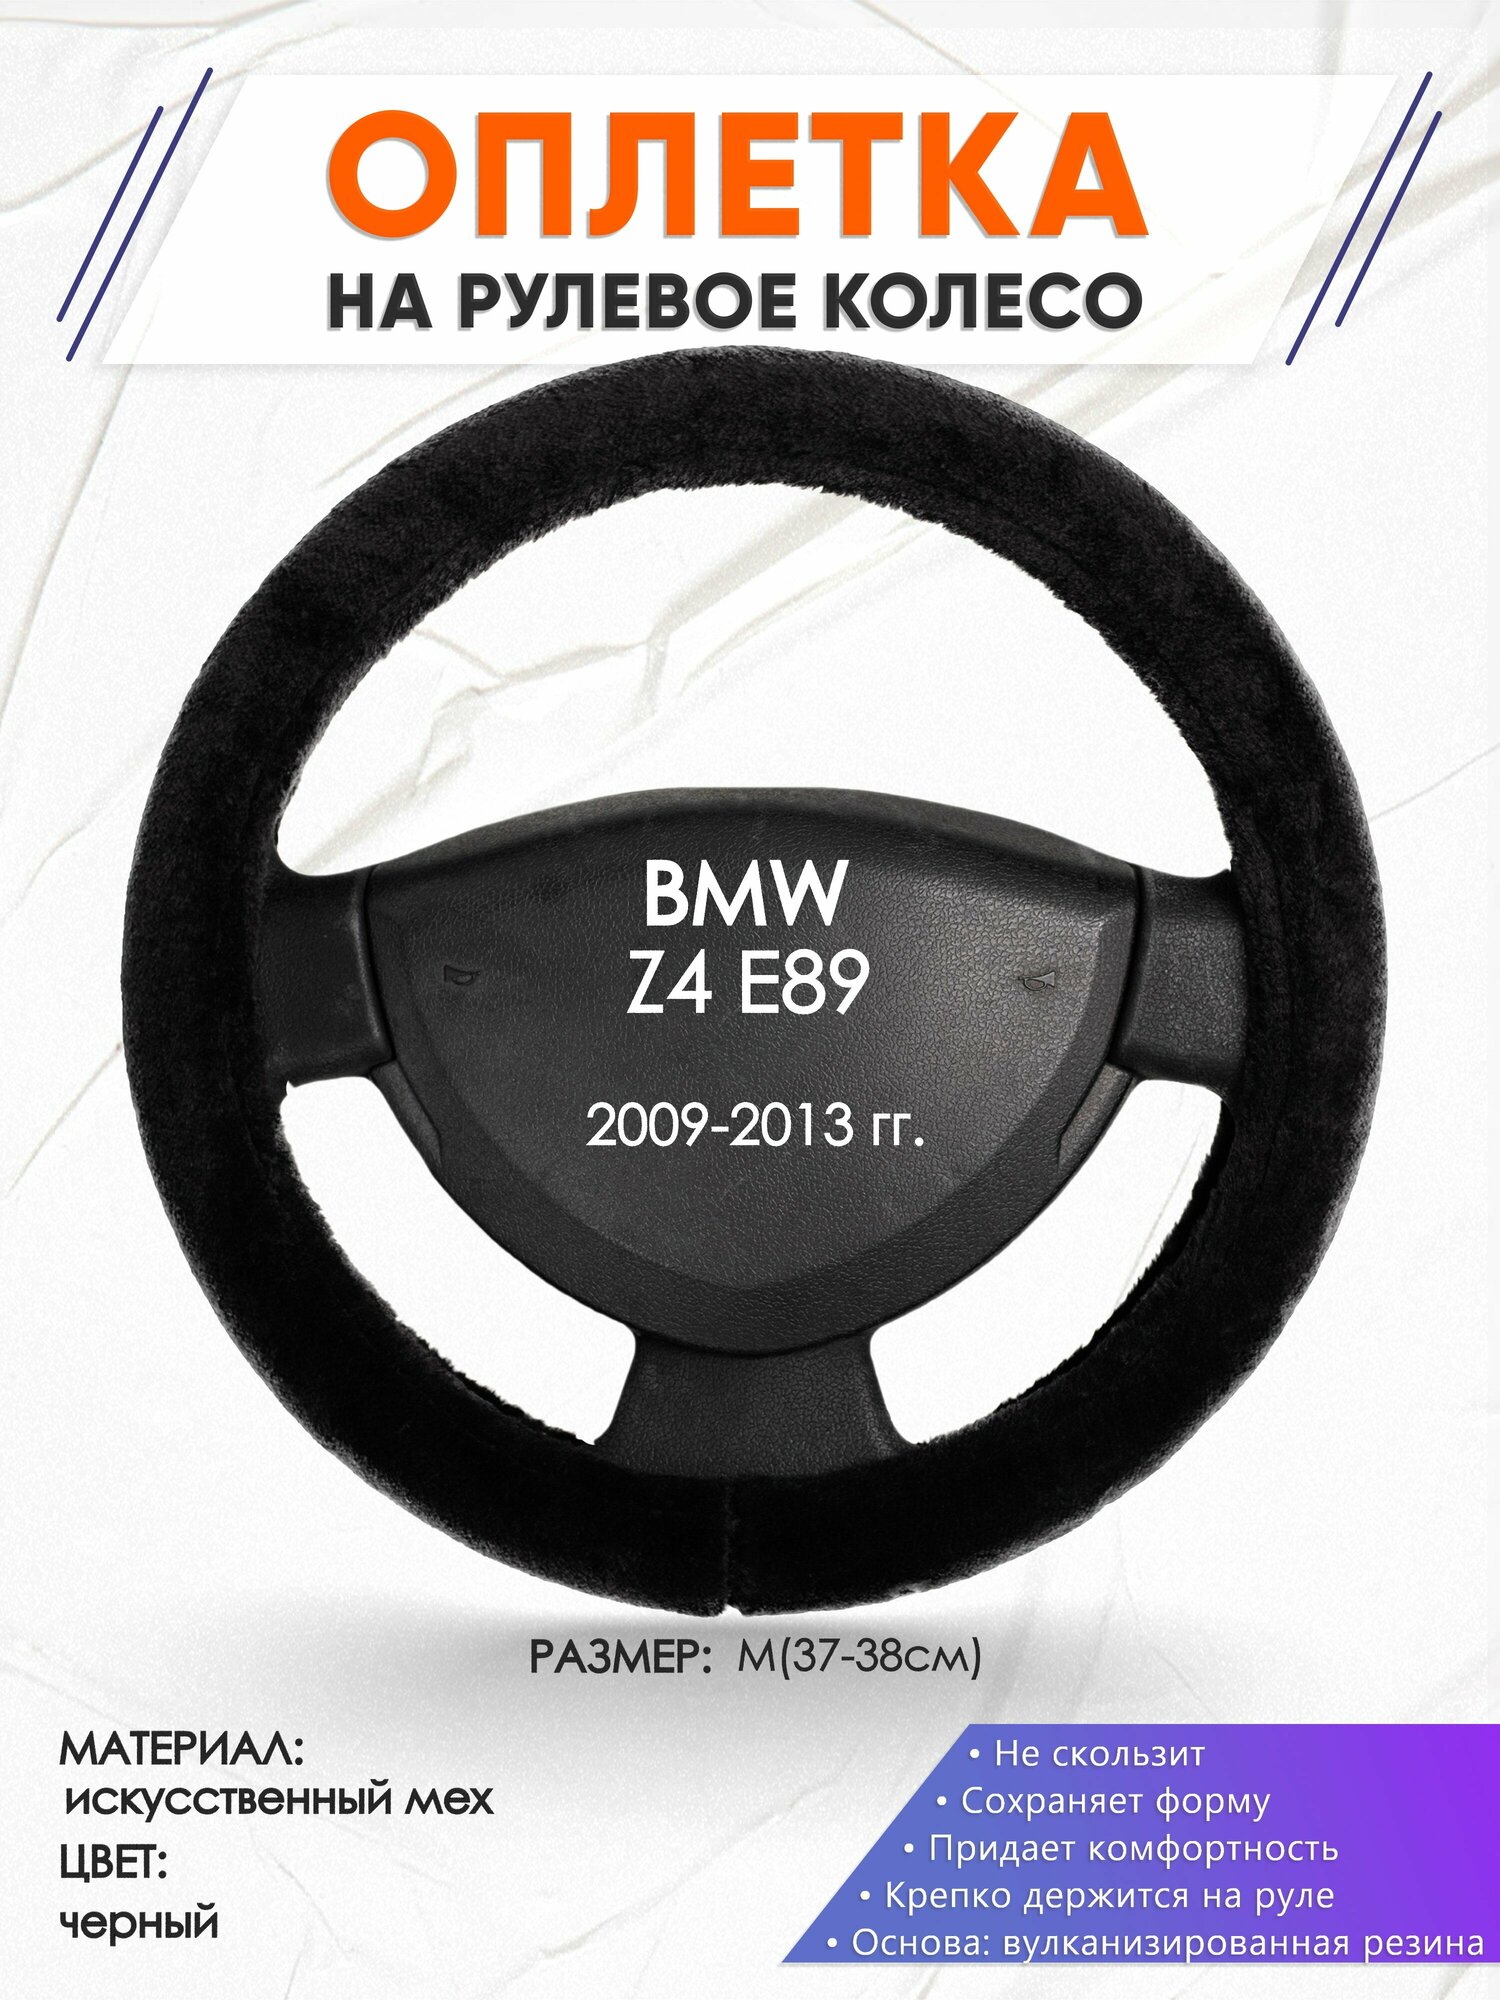 Оплетка наруль для BMW Z4 E89(Бмв зет4 Е89) 2009-2013 годов выпуска, размер M(37-38см), Искусственный мех 45